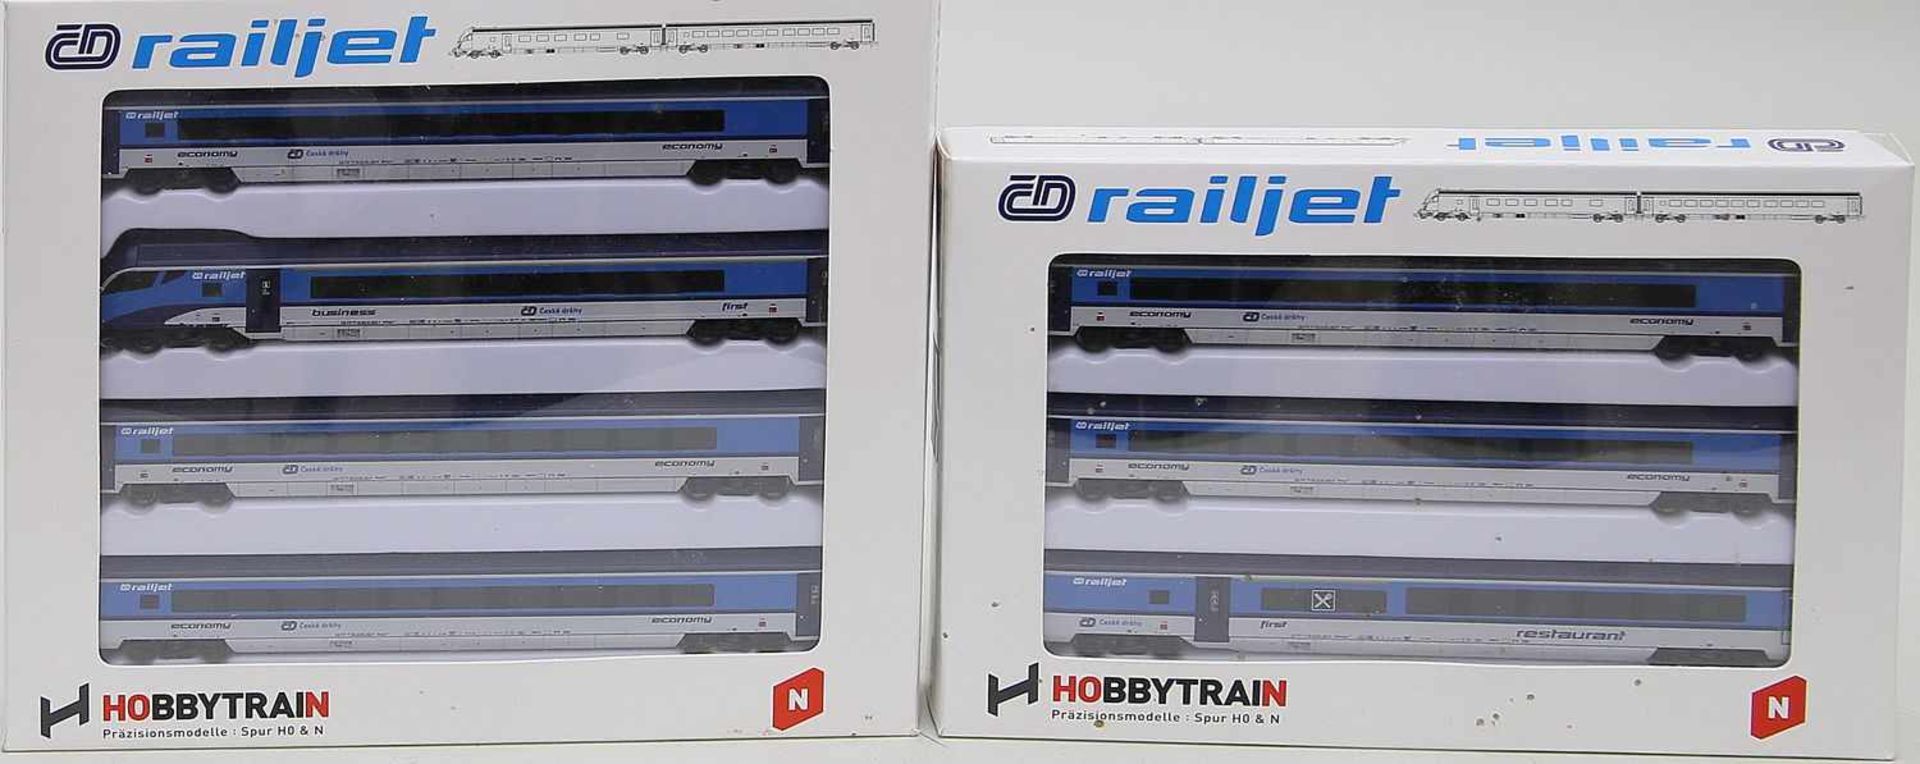 7-teiliger ÖBB-Railjet, Hobbytrain, Spur N."CD Railjet" mit Lok und Steuerwagen, Funktionen nicht